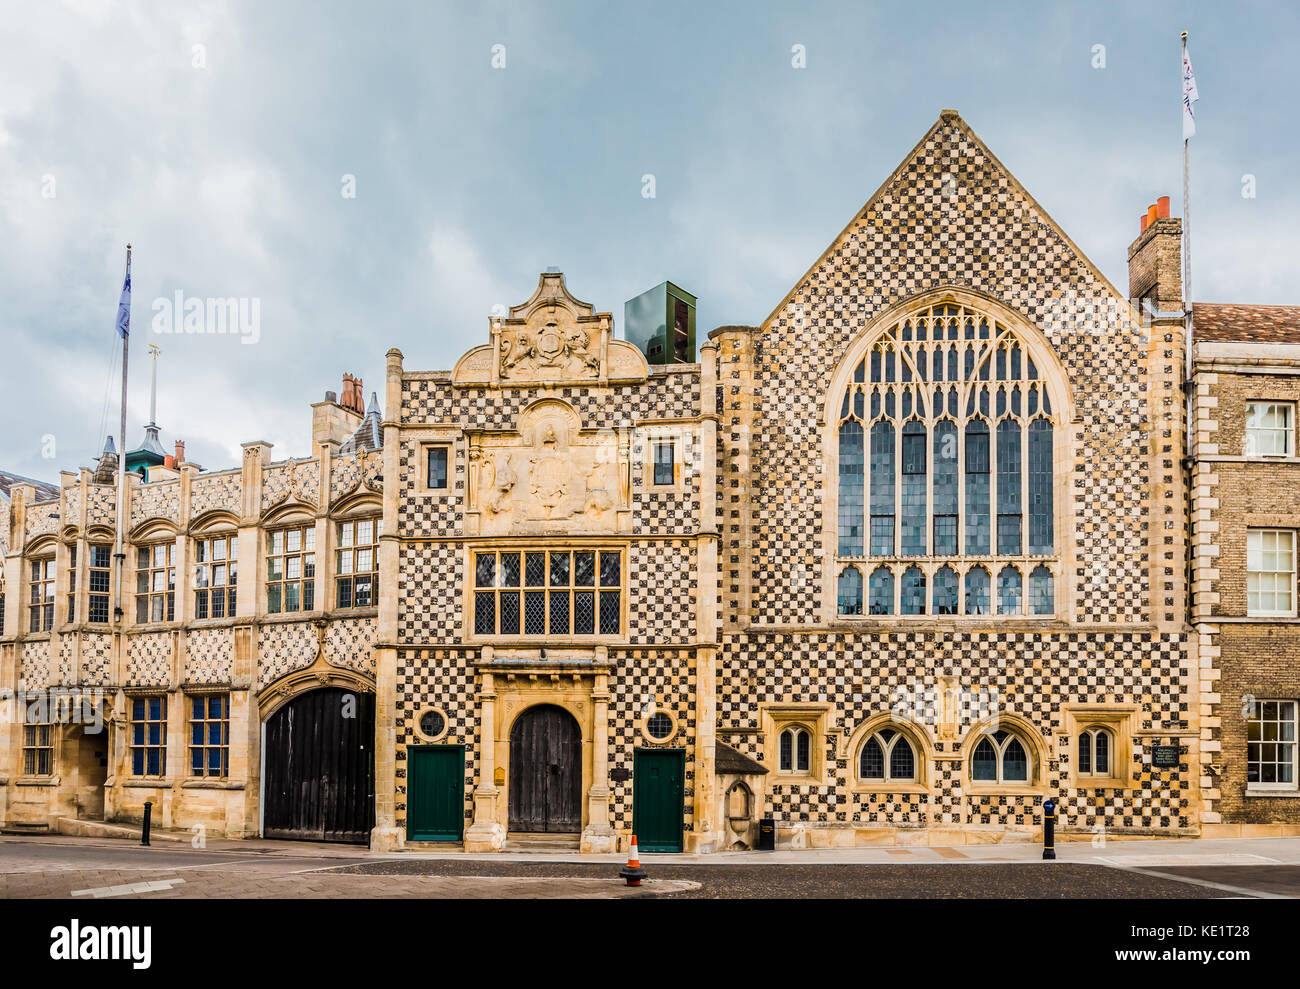 Kings Lynn Guildhall, mittelalterliche englische Architektur mit Feuerstein und flushwork checkrboard Muster. Stockfoto